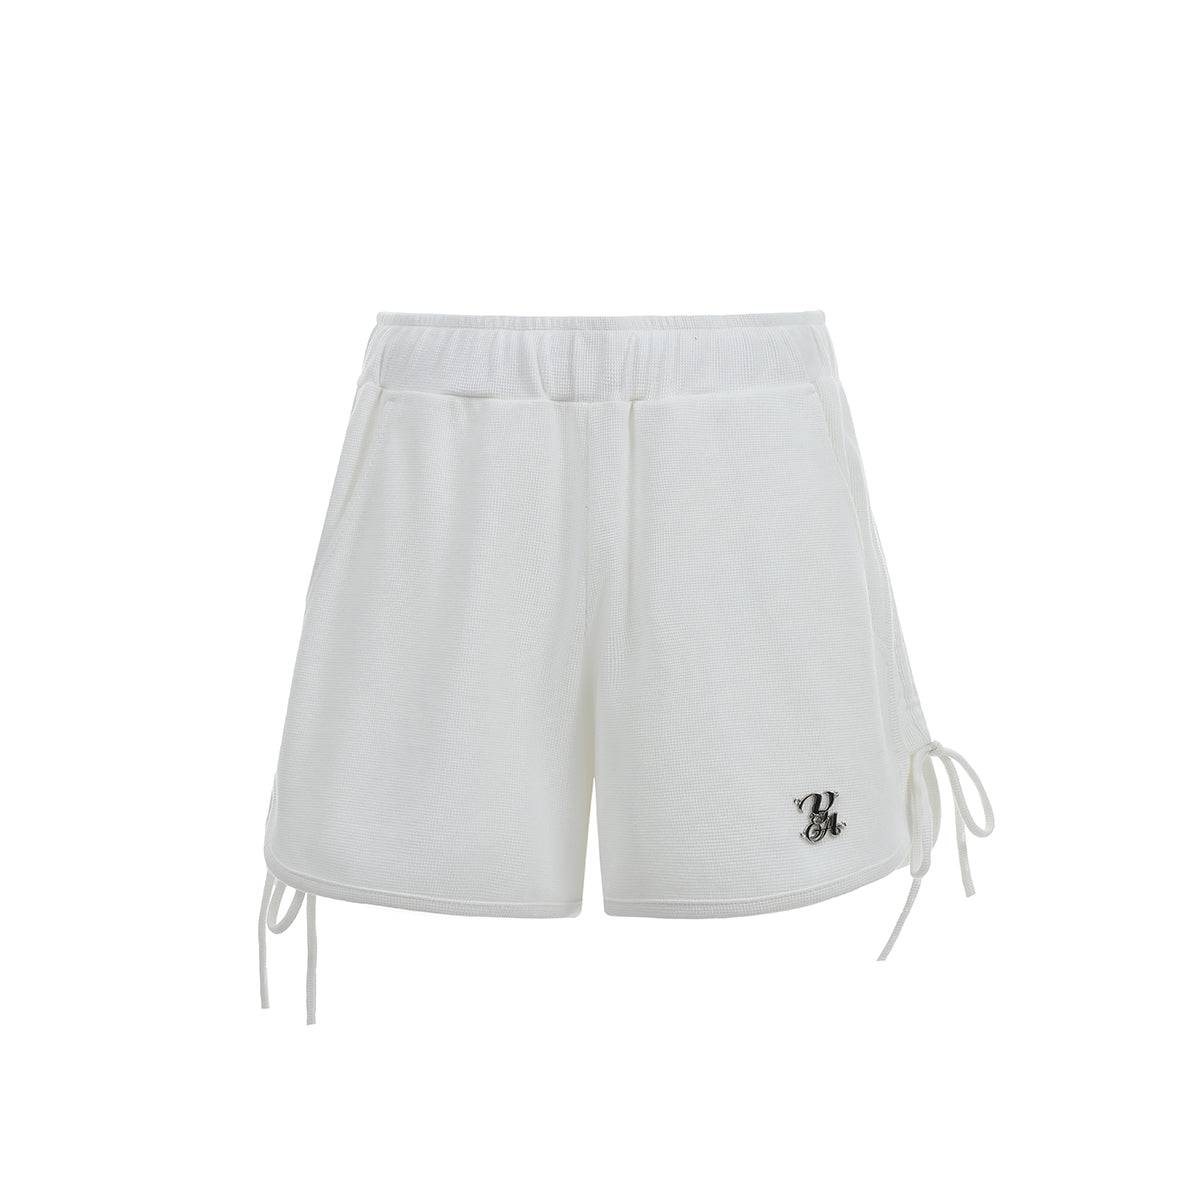 Oversized White Logo Drawstring Shorts - chiclara